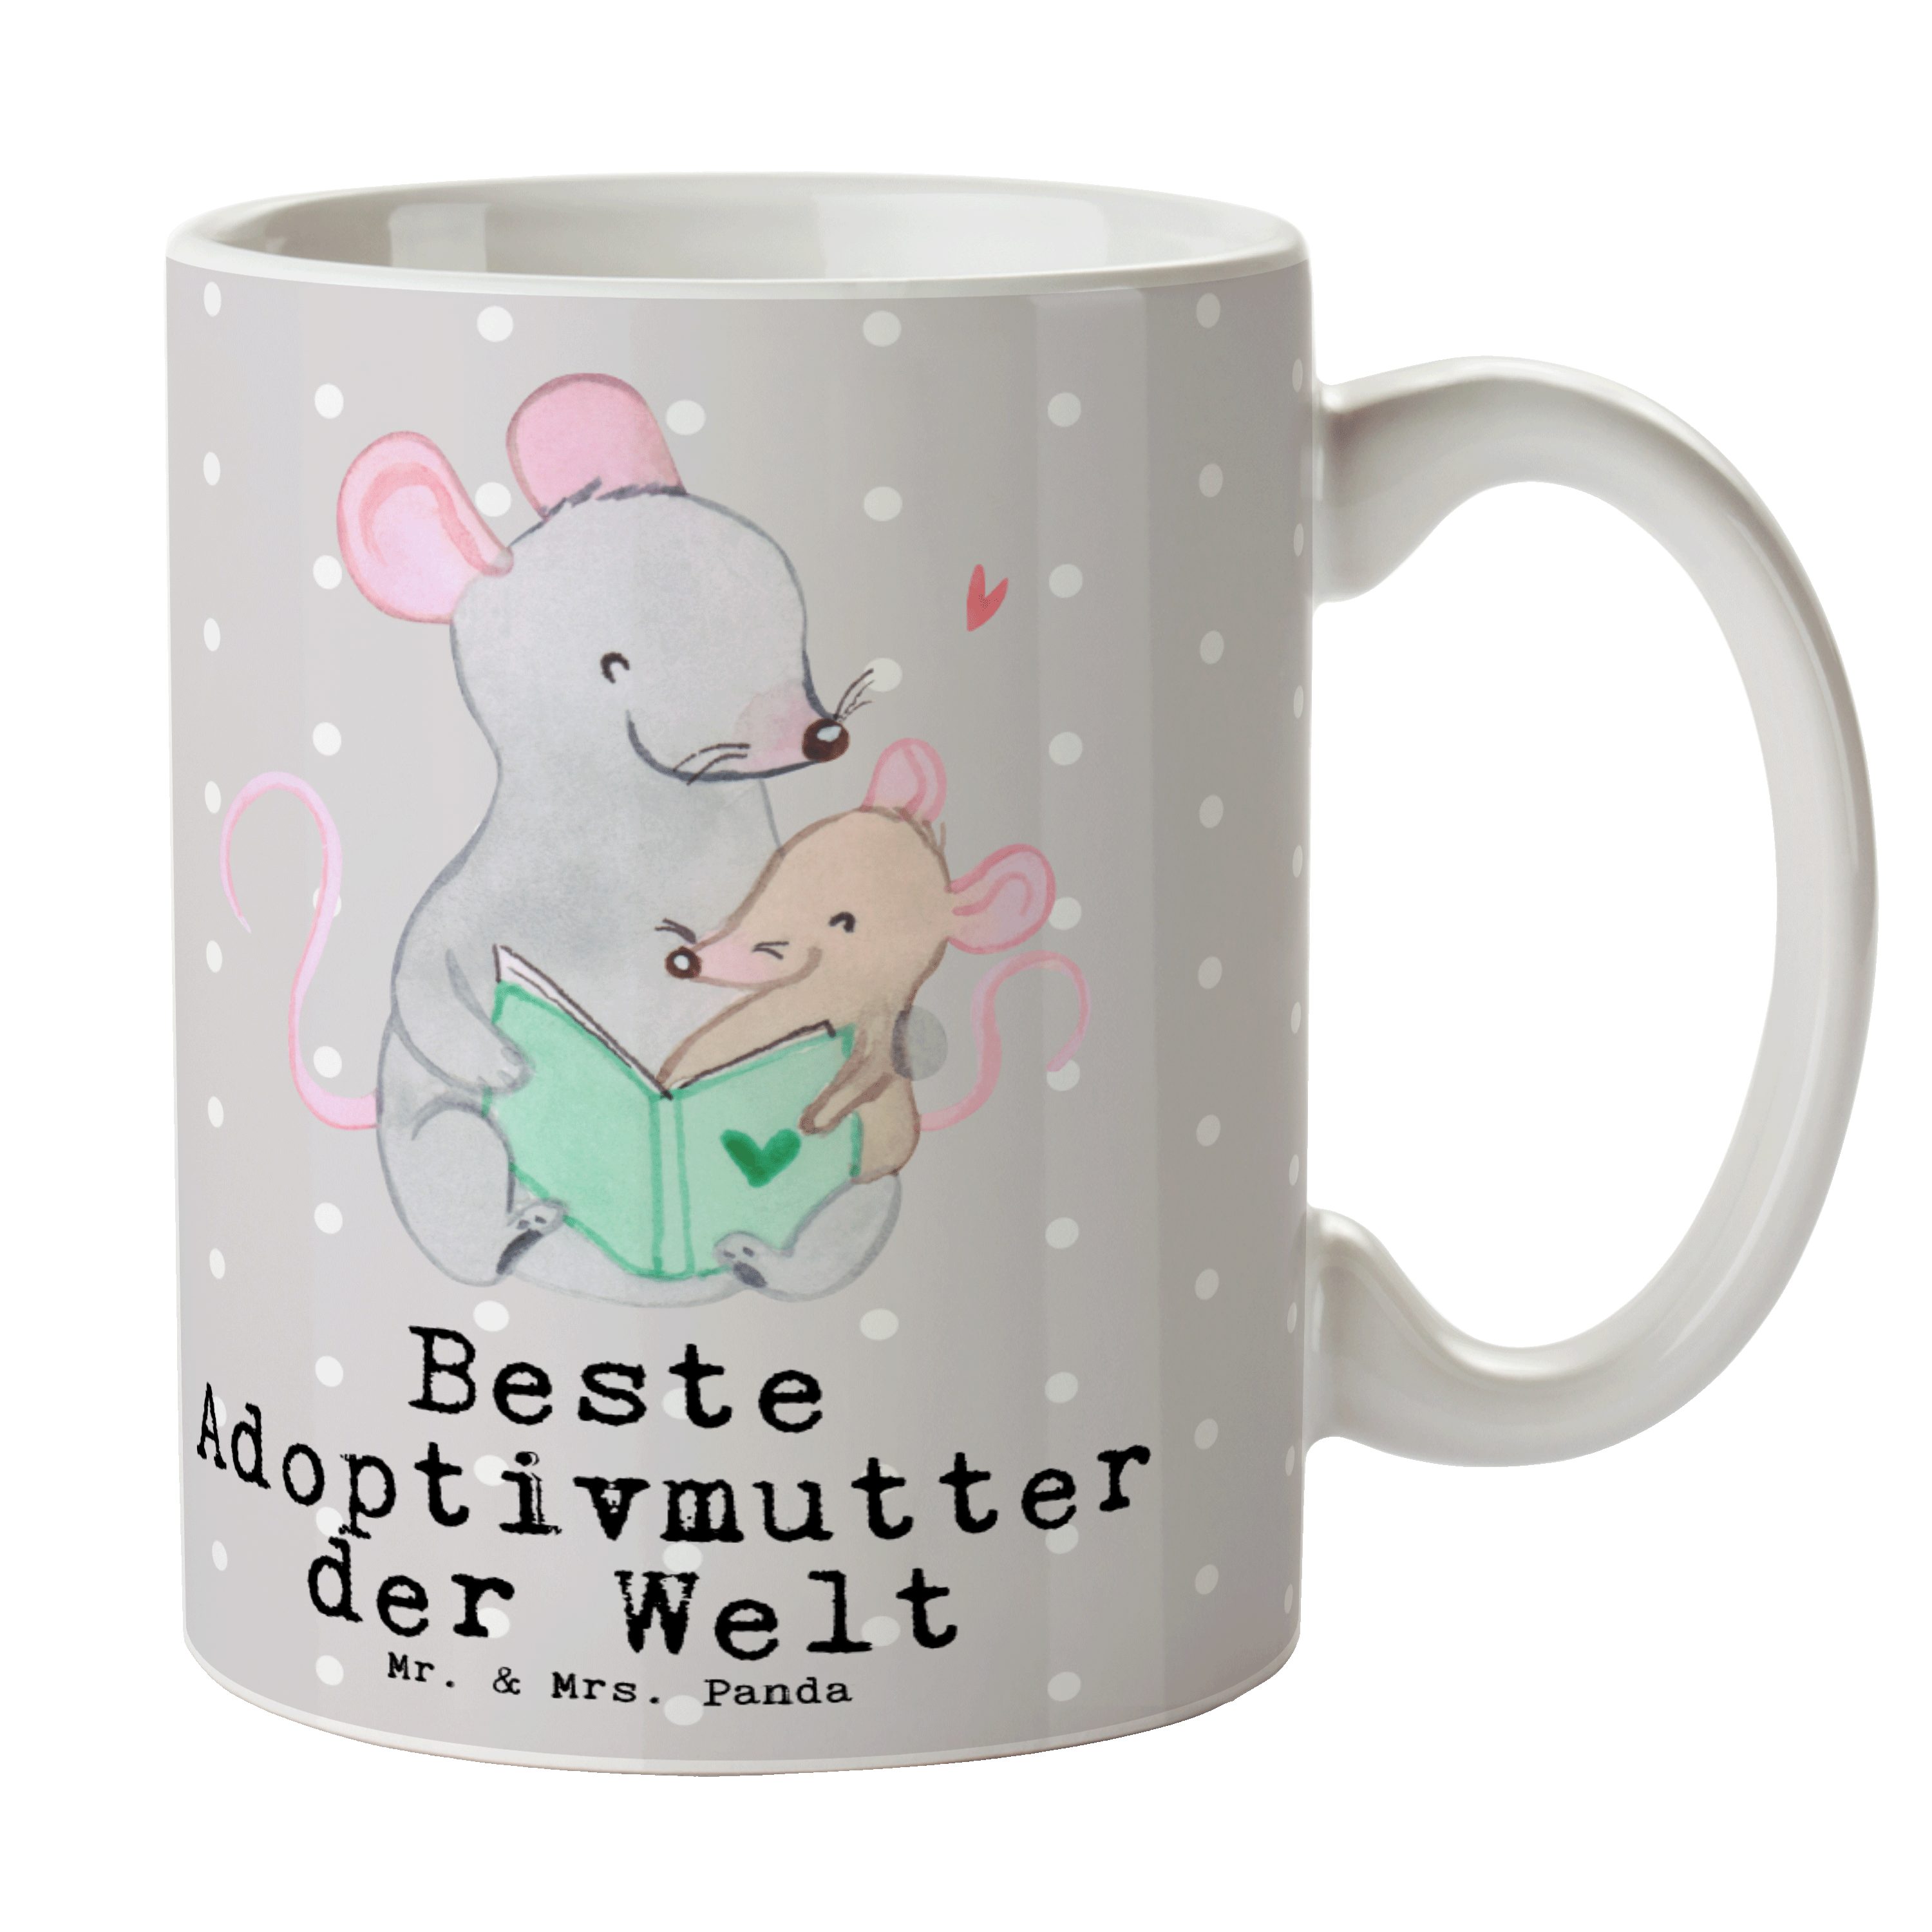 Mr. & Mrs. Panda Tasse Maus Beste Adoptivmutter der Welt - Grau Pastell - Geschenk, Dankesch, Keramik